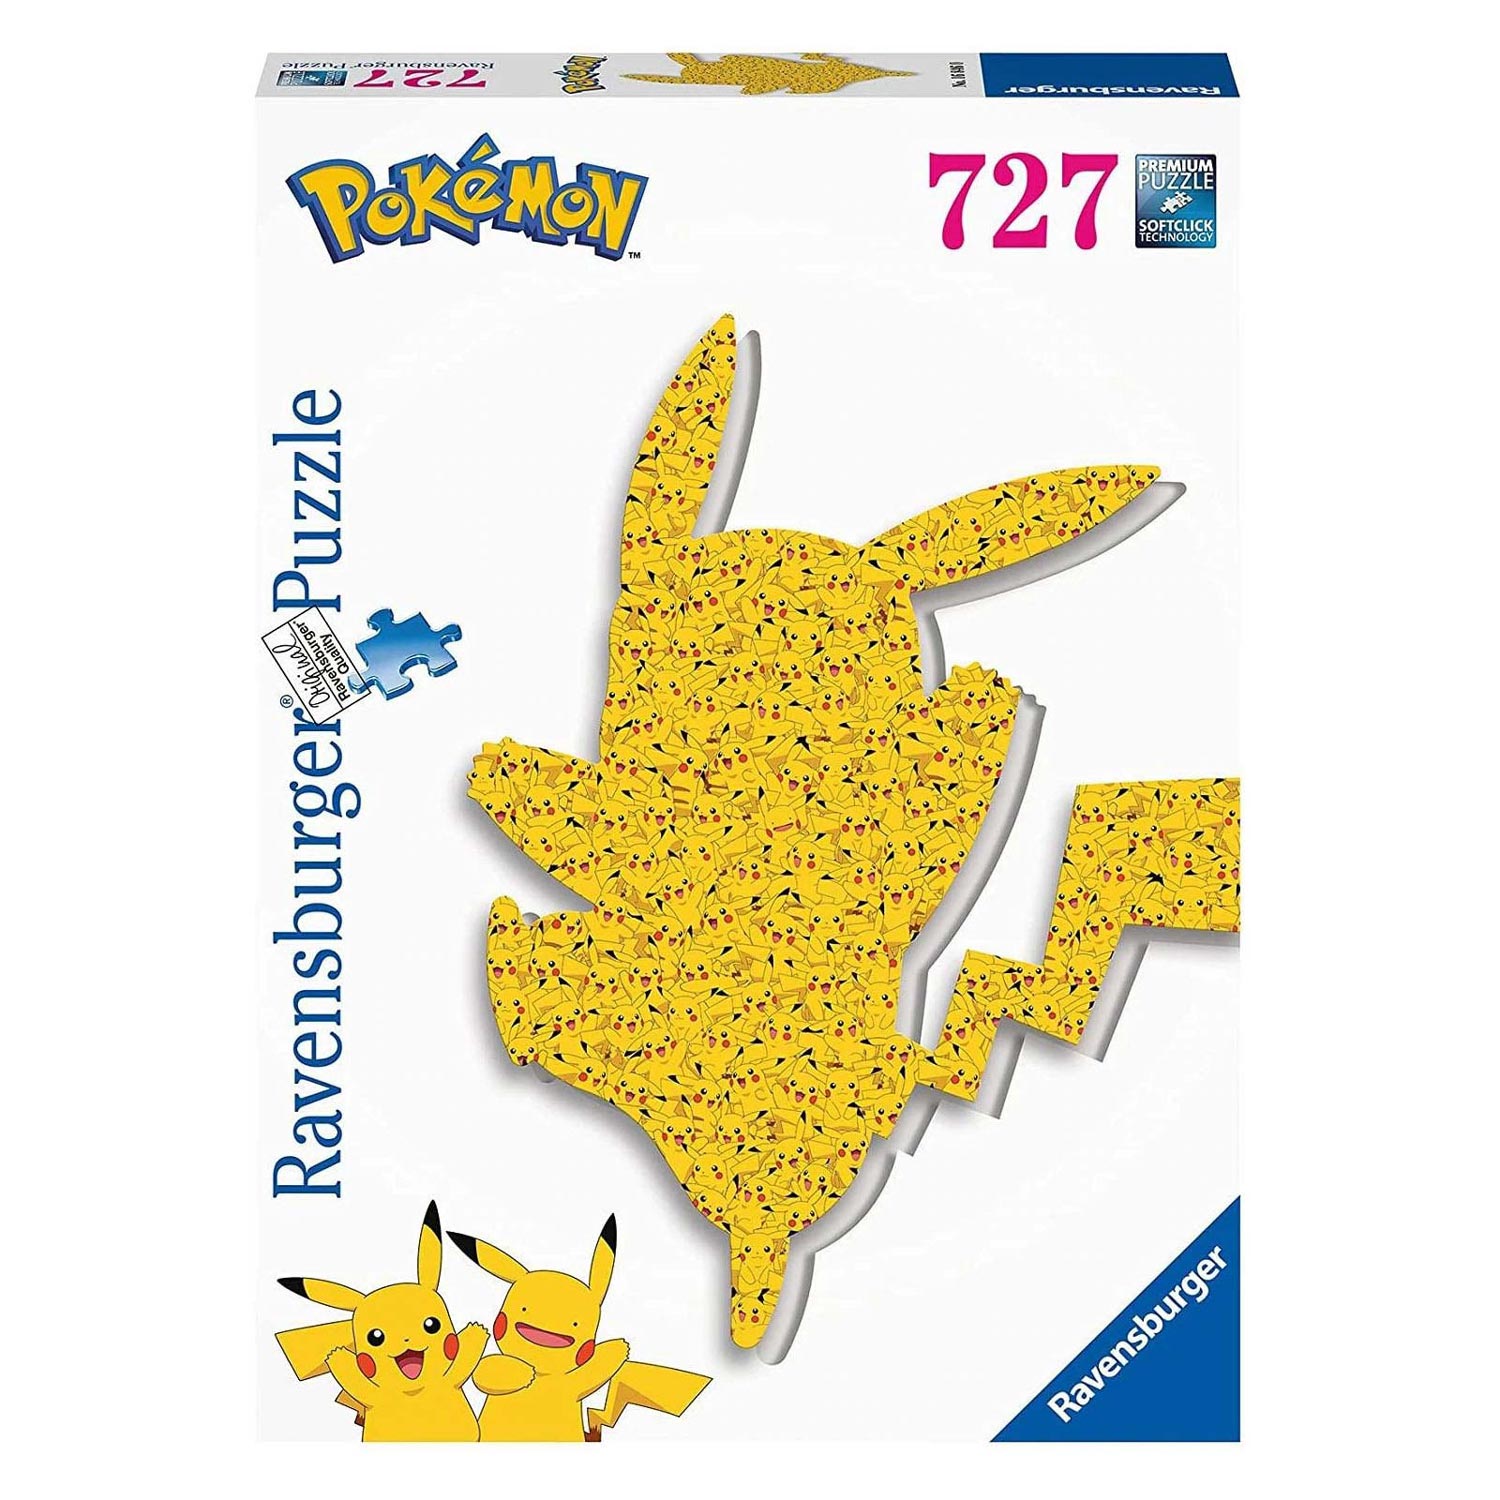 Puzzle 500 pieces Pokemon complet - Ravensburger - Ravensburger